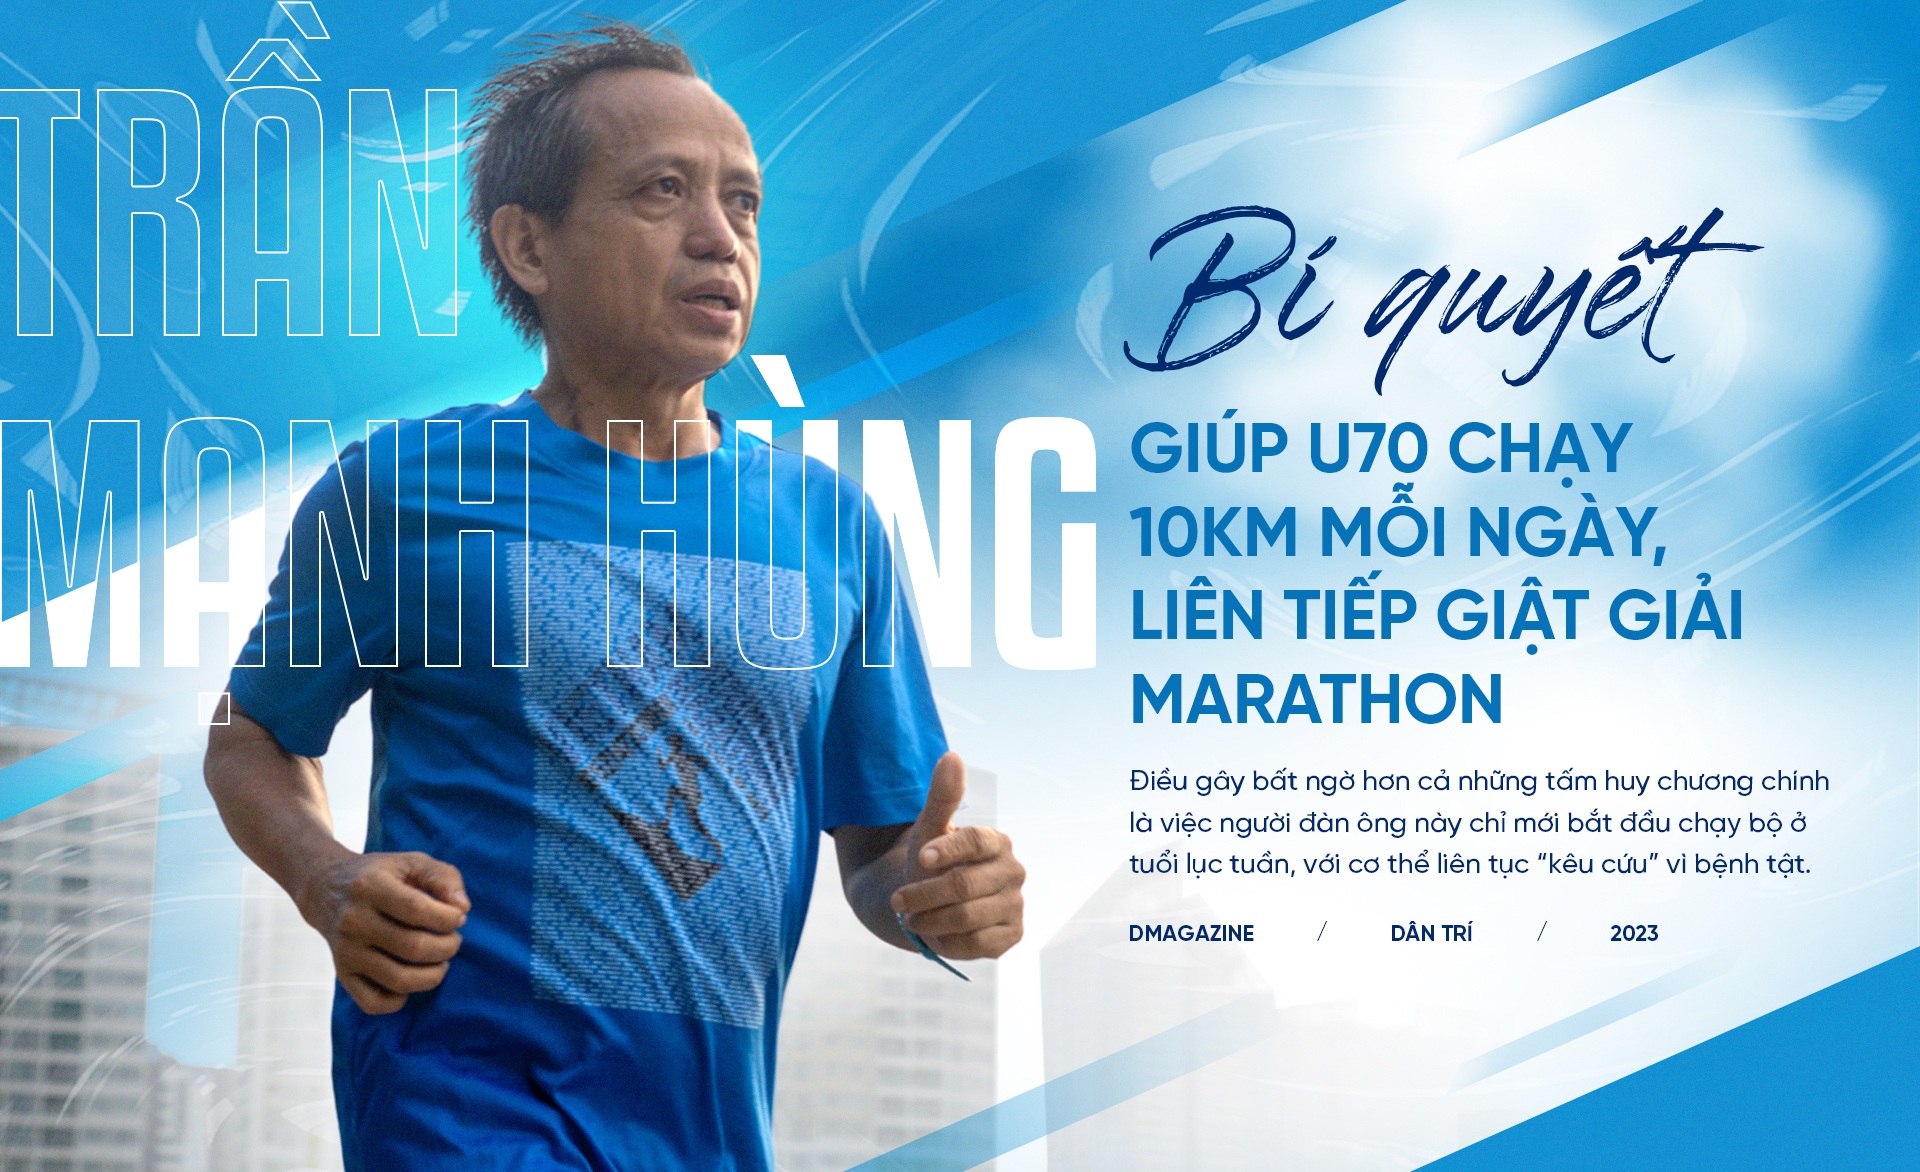 Bí quyết giúp vận động viên U70 chạy 10km mỗi ngày, liên tiếp giật giải marathon